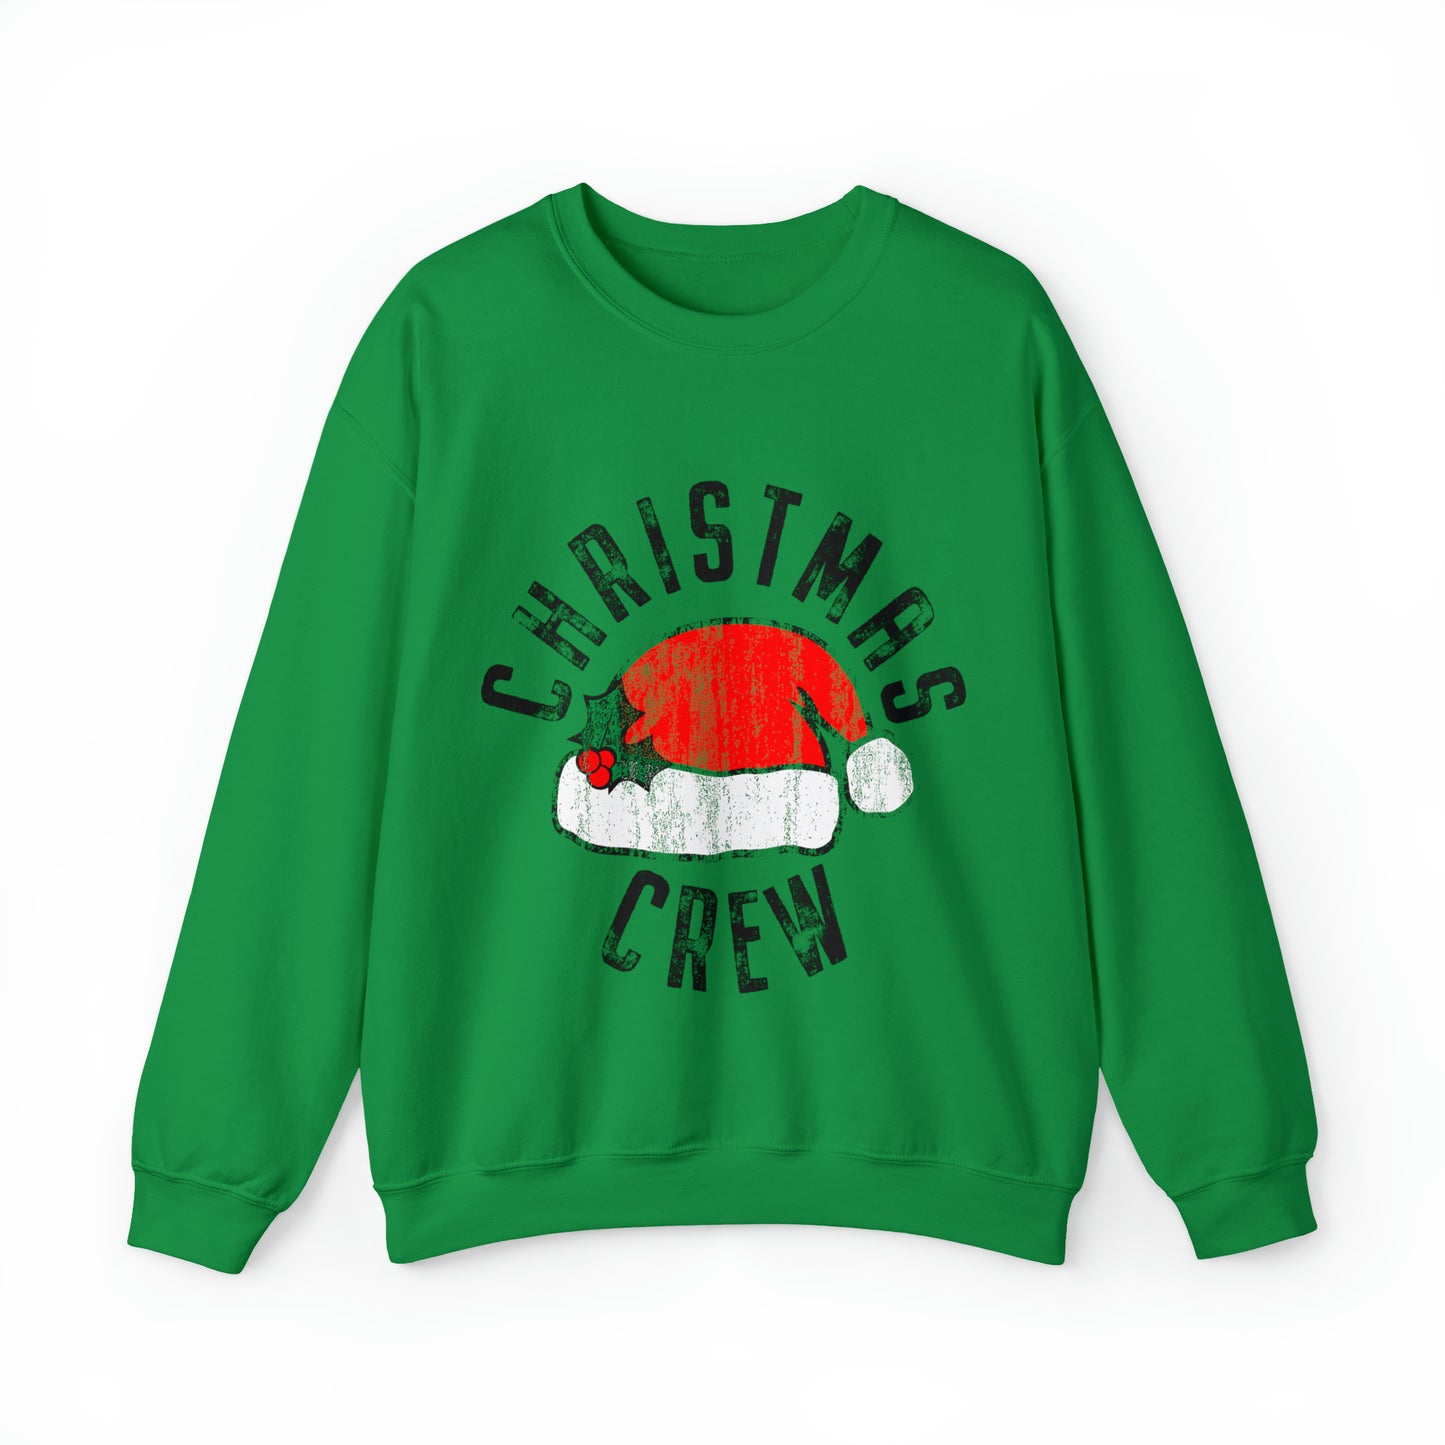 Christmas Crew Group Unisex Adult Christmas Crewneck Sweatshirt